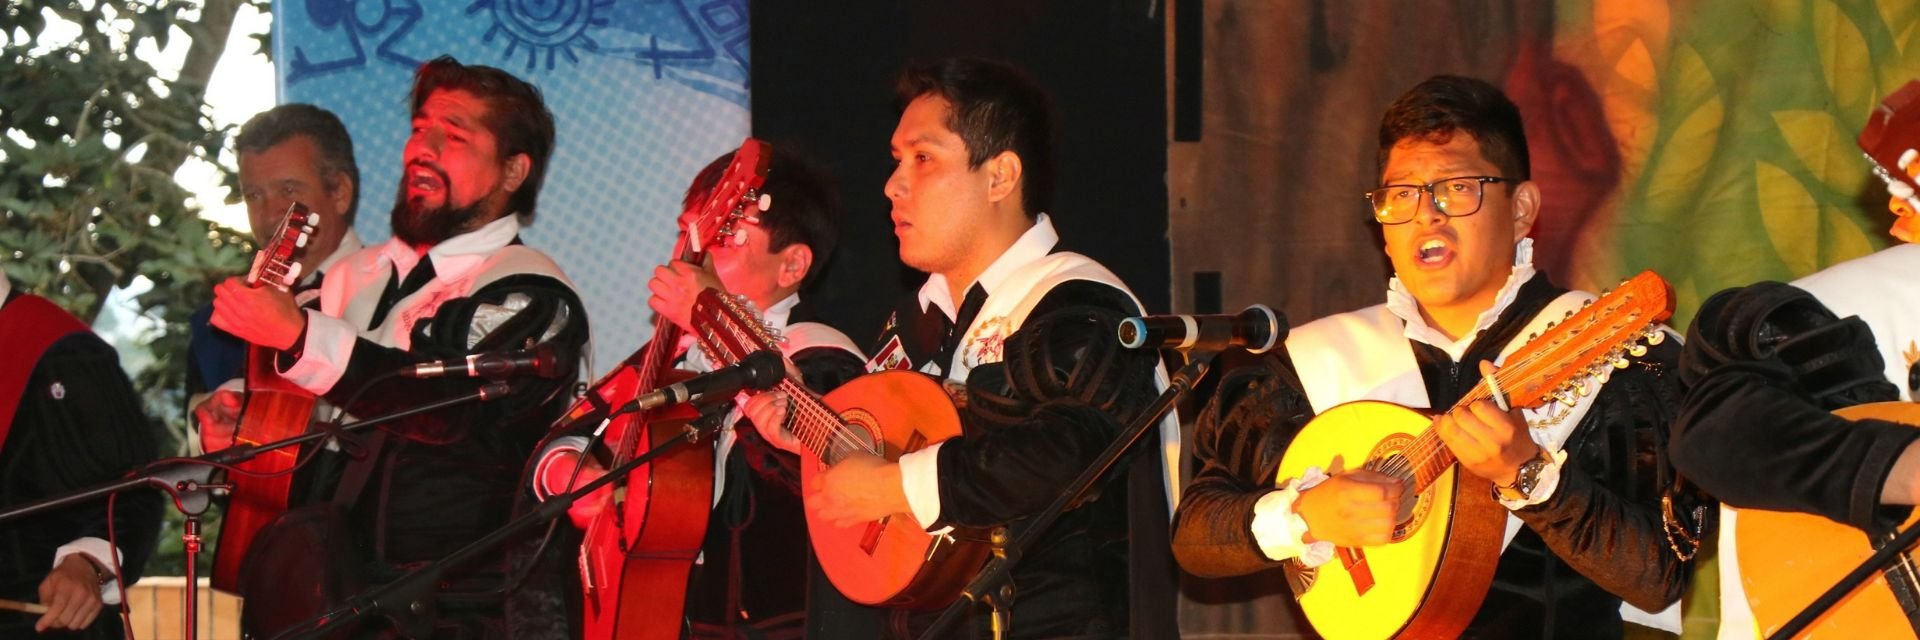 Tuna ‘Alas Peruanas’ cautivó al público de la UDES con sus ritmos andinos